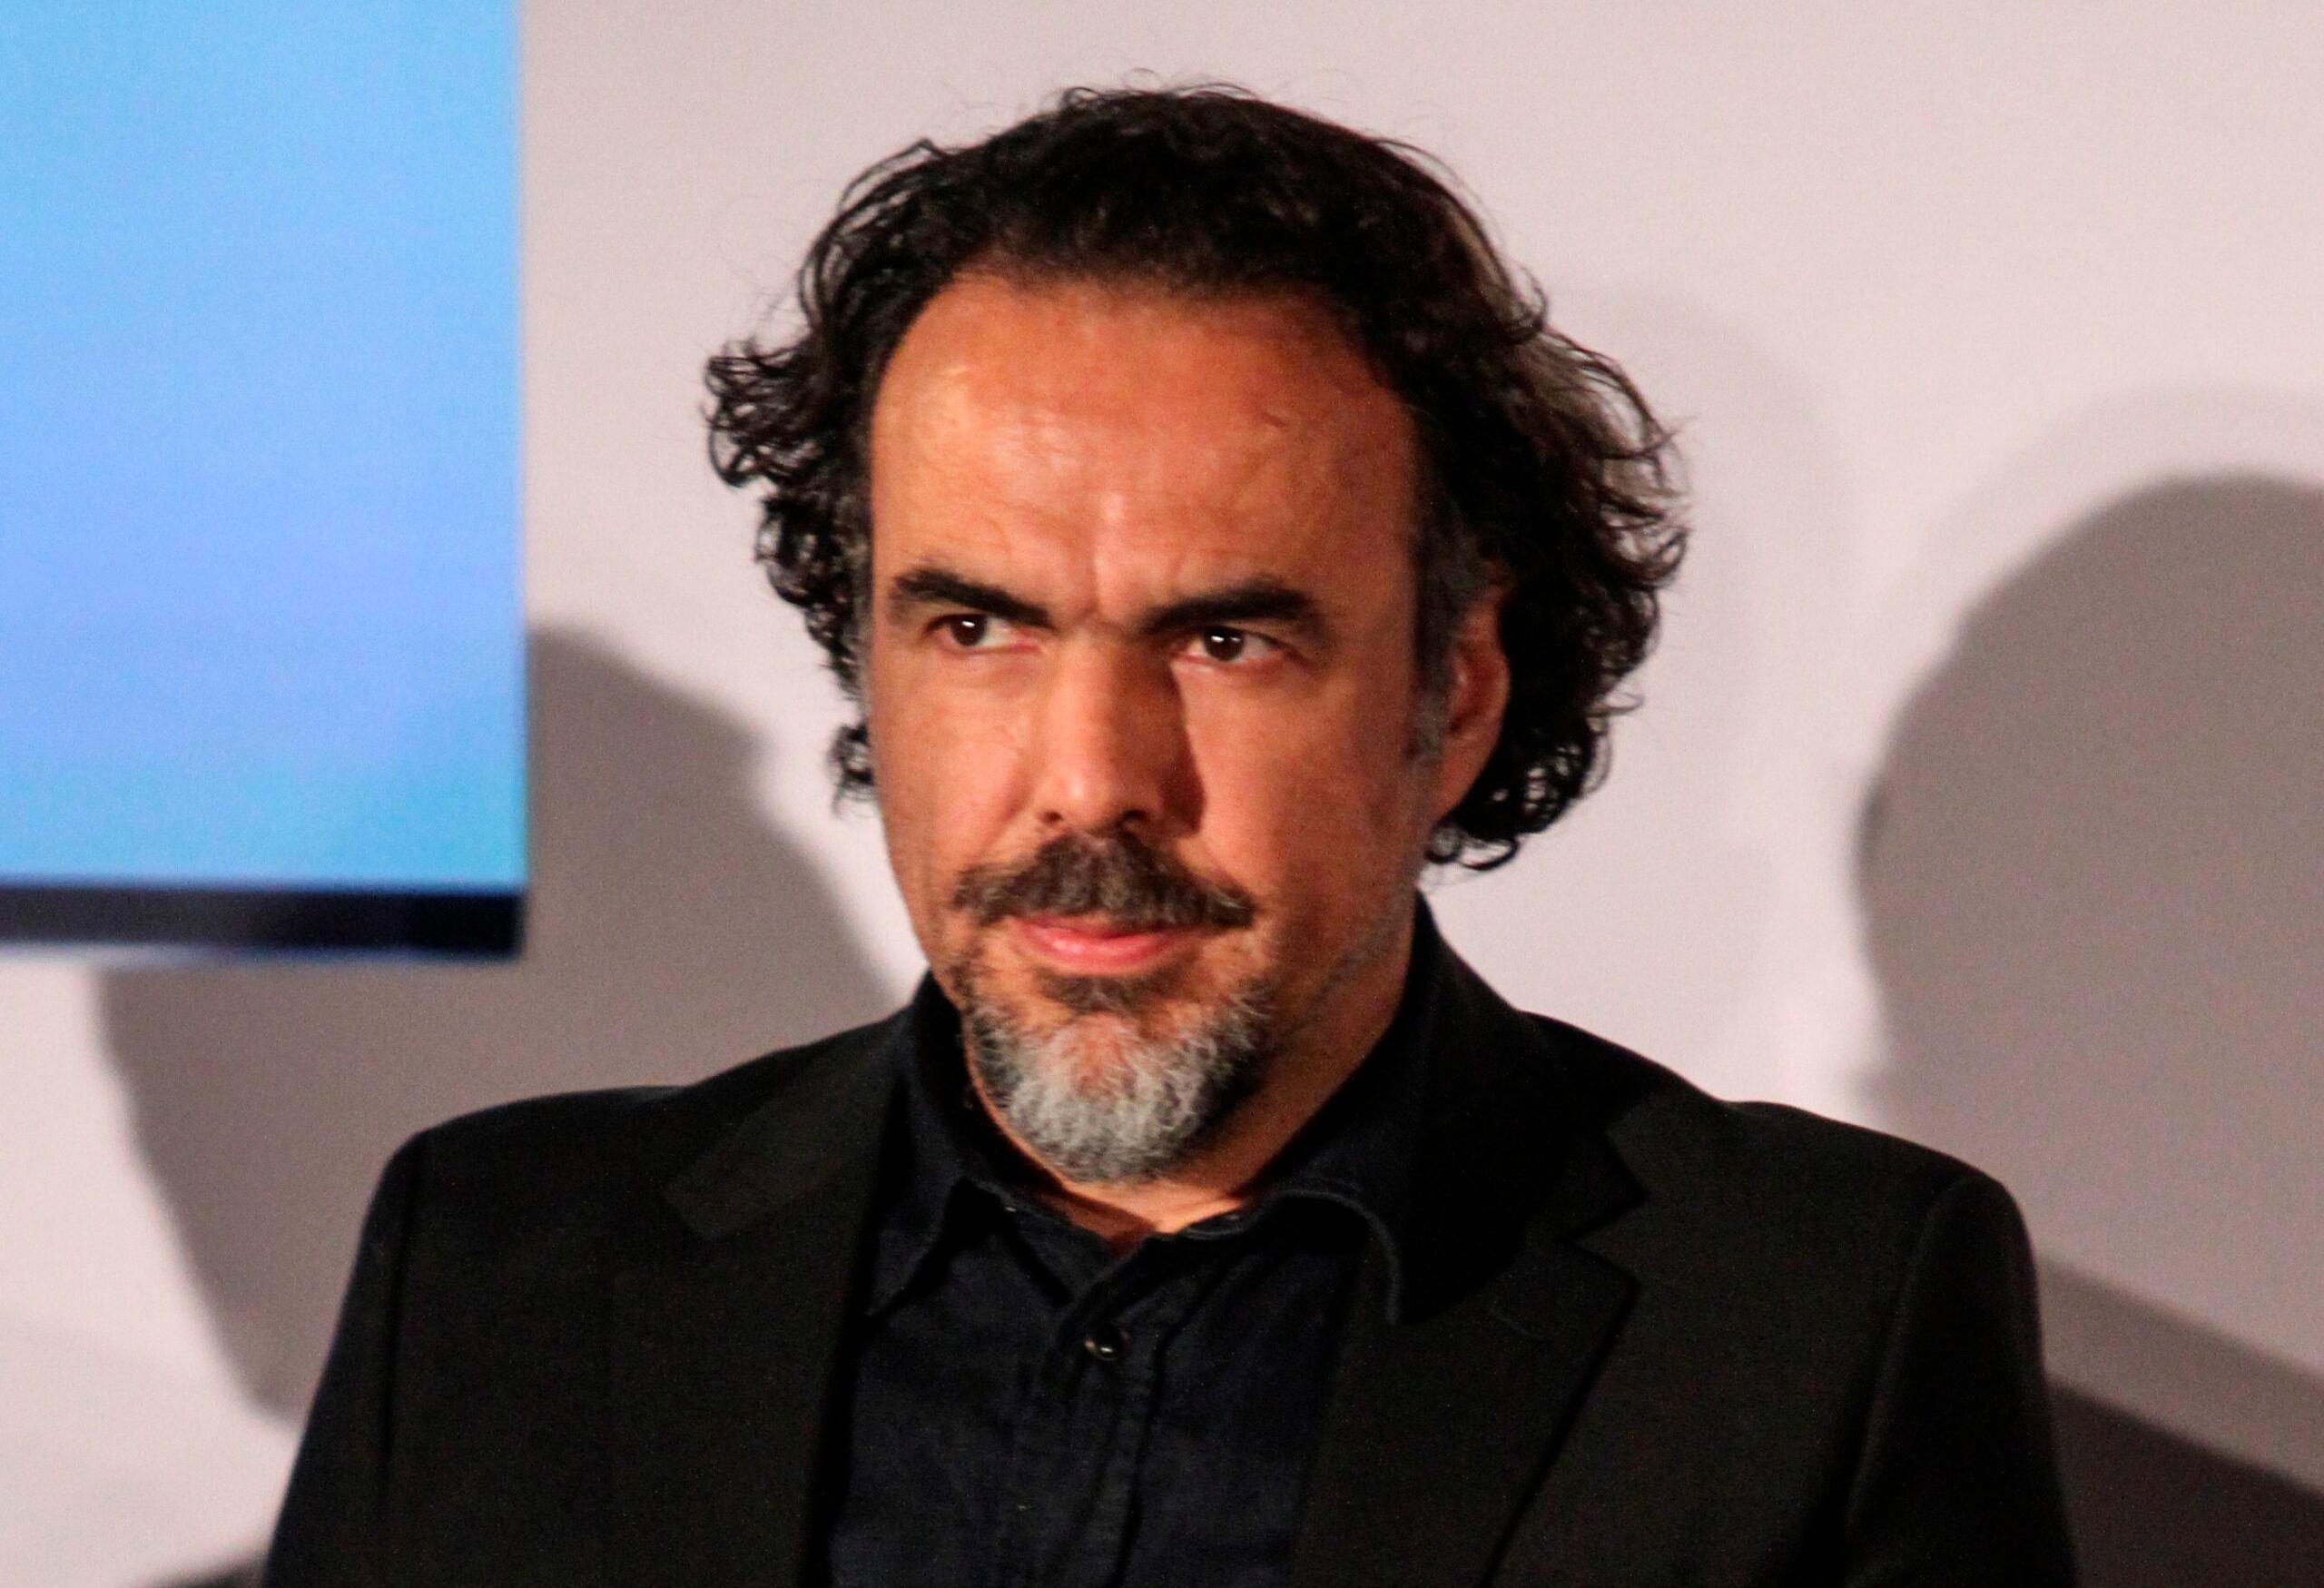 Invitar a Trump fue una traición, Peña Nieto ya no me representa: González Iñárritu